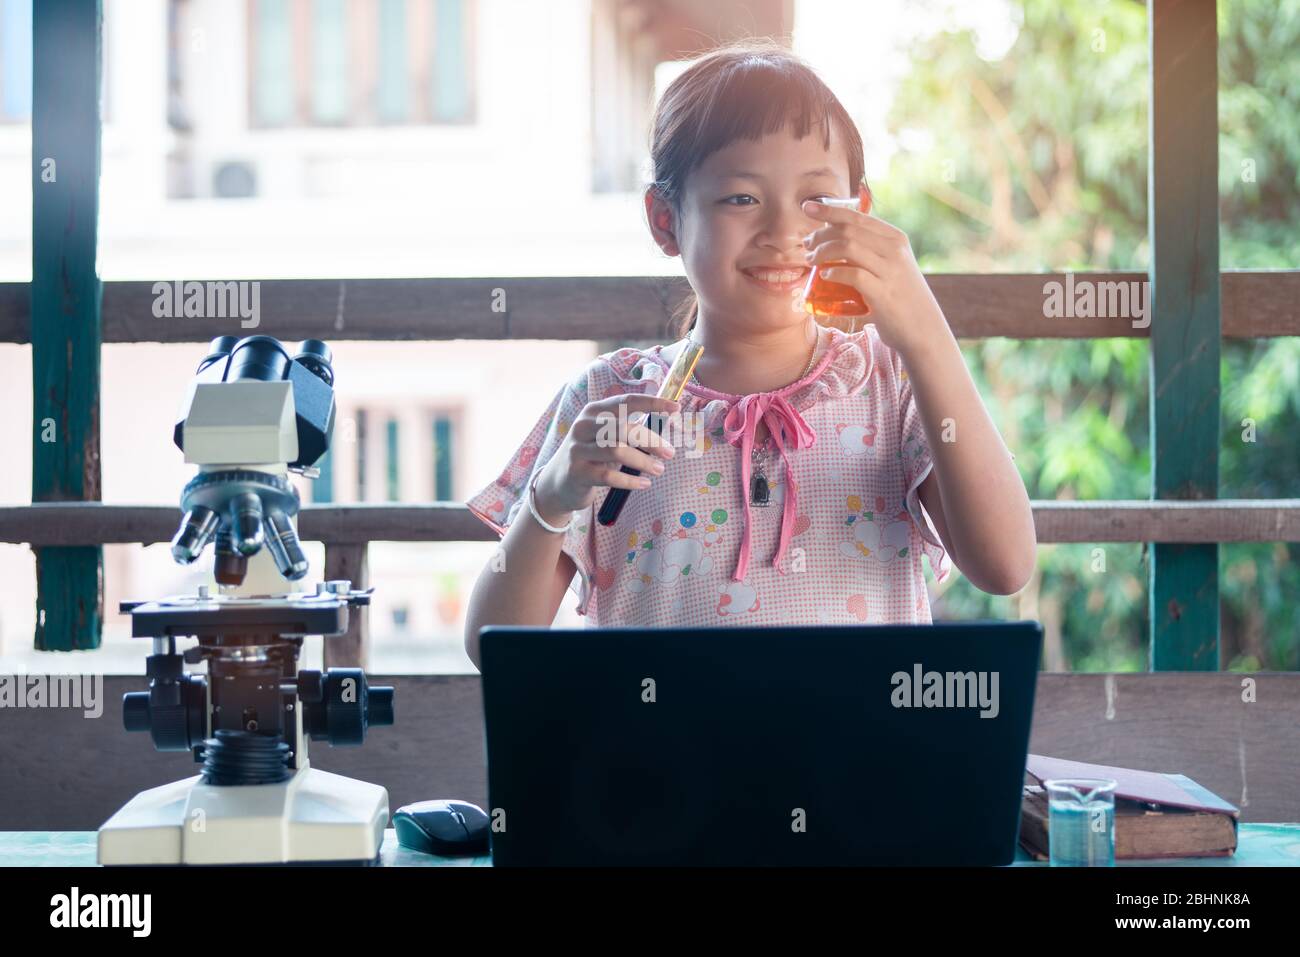 Lächeln kleines Kind Mädchen lernen und machen Wissenschaft Experimente. Home School Education Konzept. Stockfoto